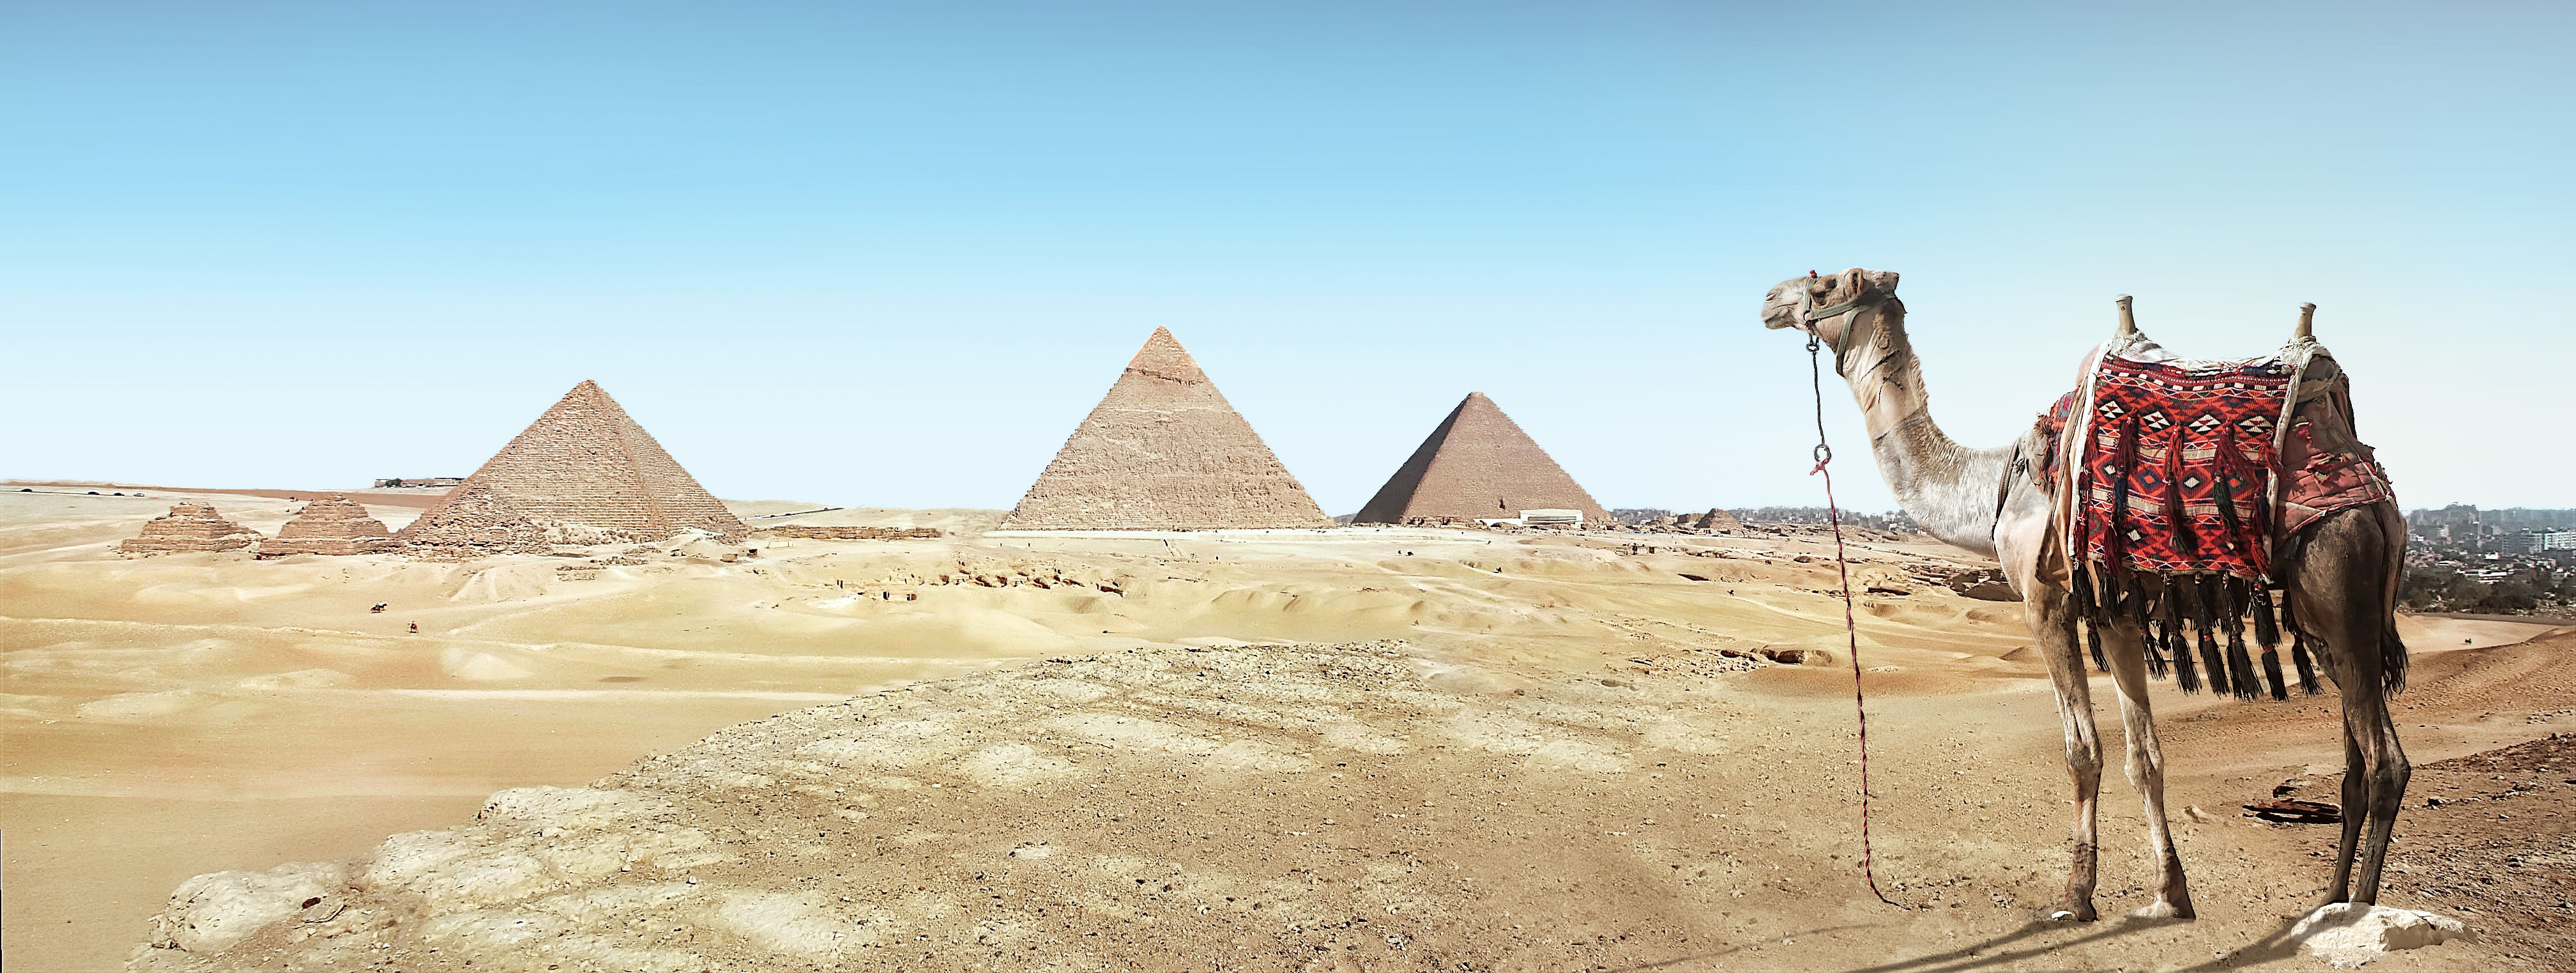 金字塔前的骆驼